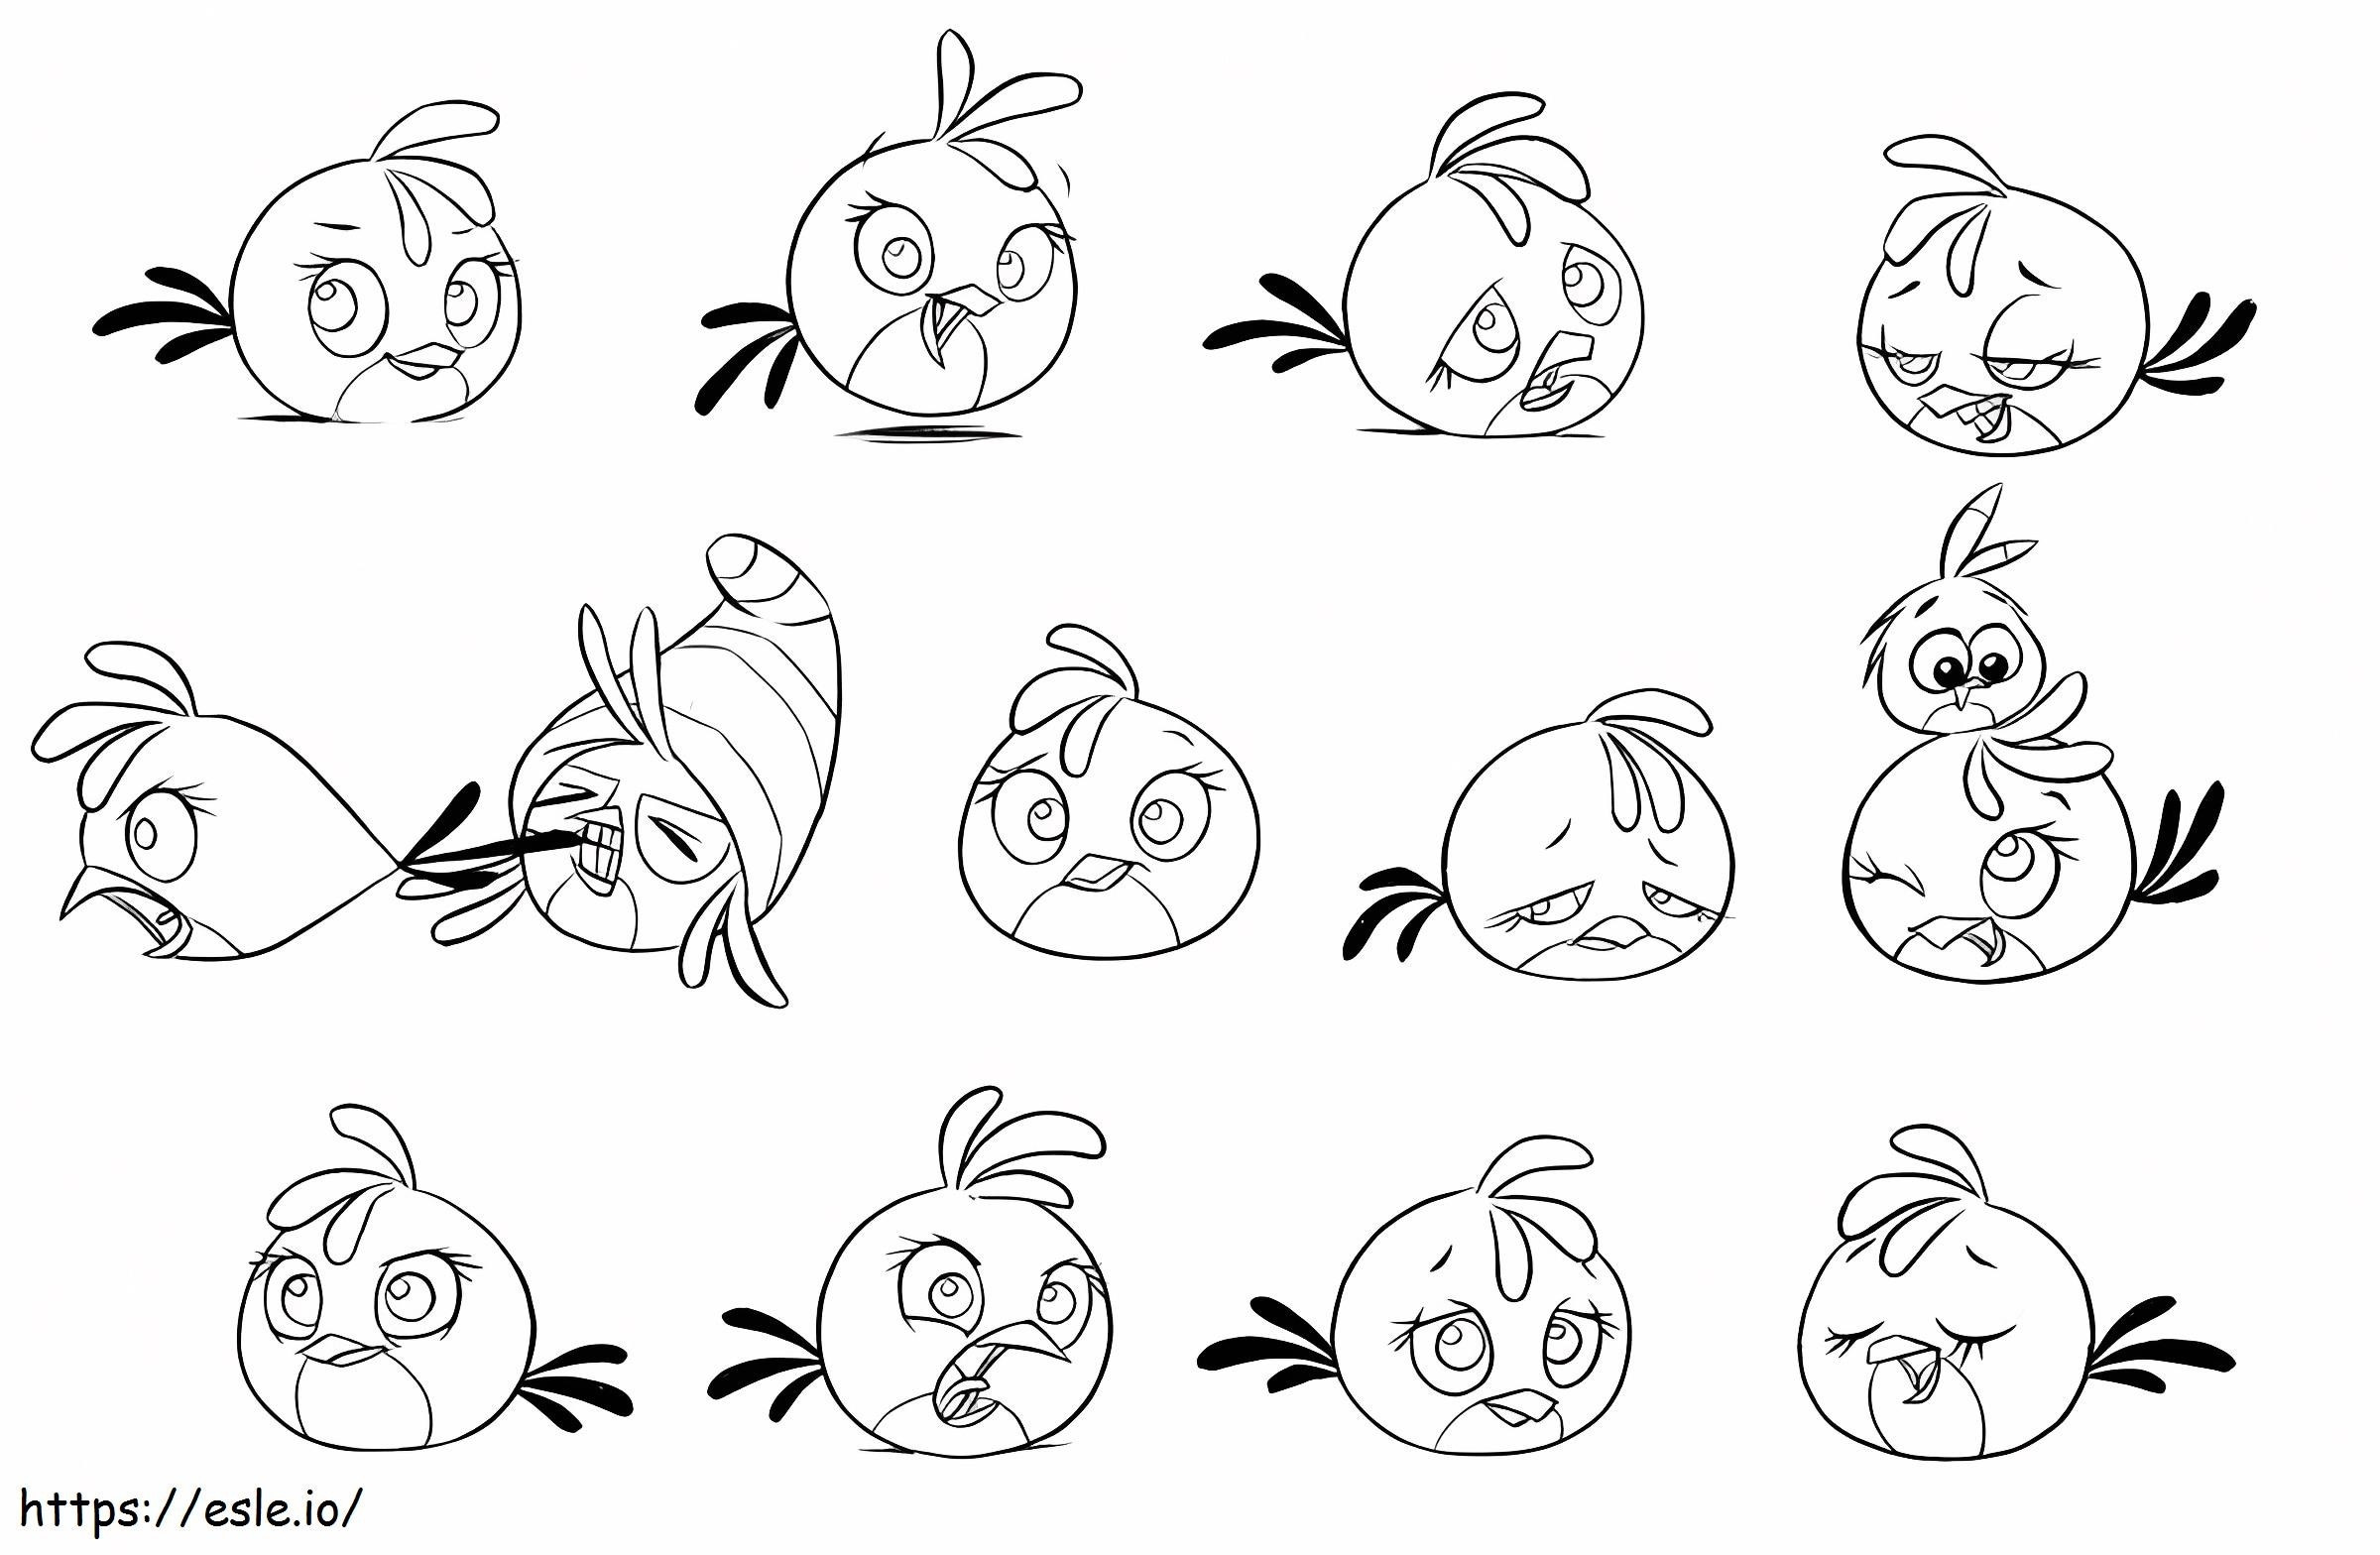 Coloriage Tous les types d'Angry Birds Stella à imprimer dessin